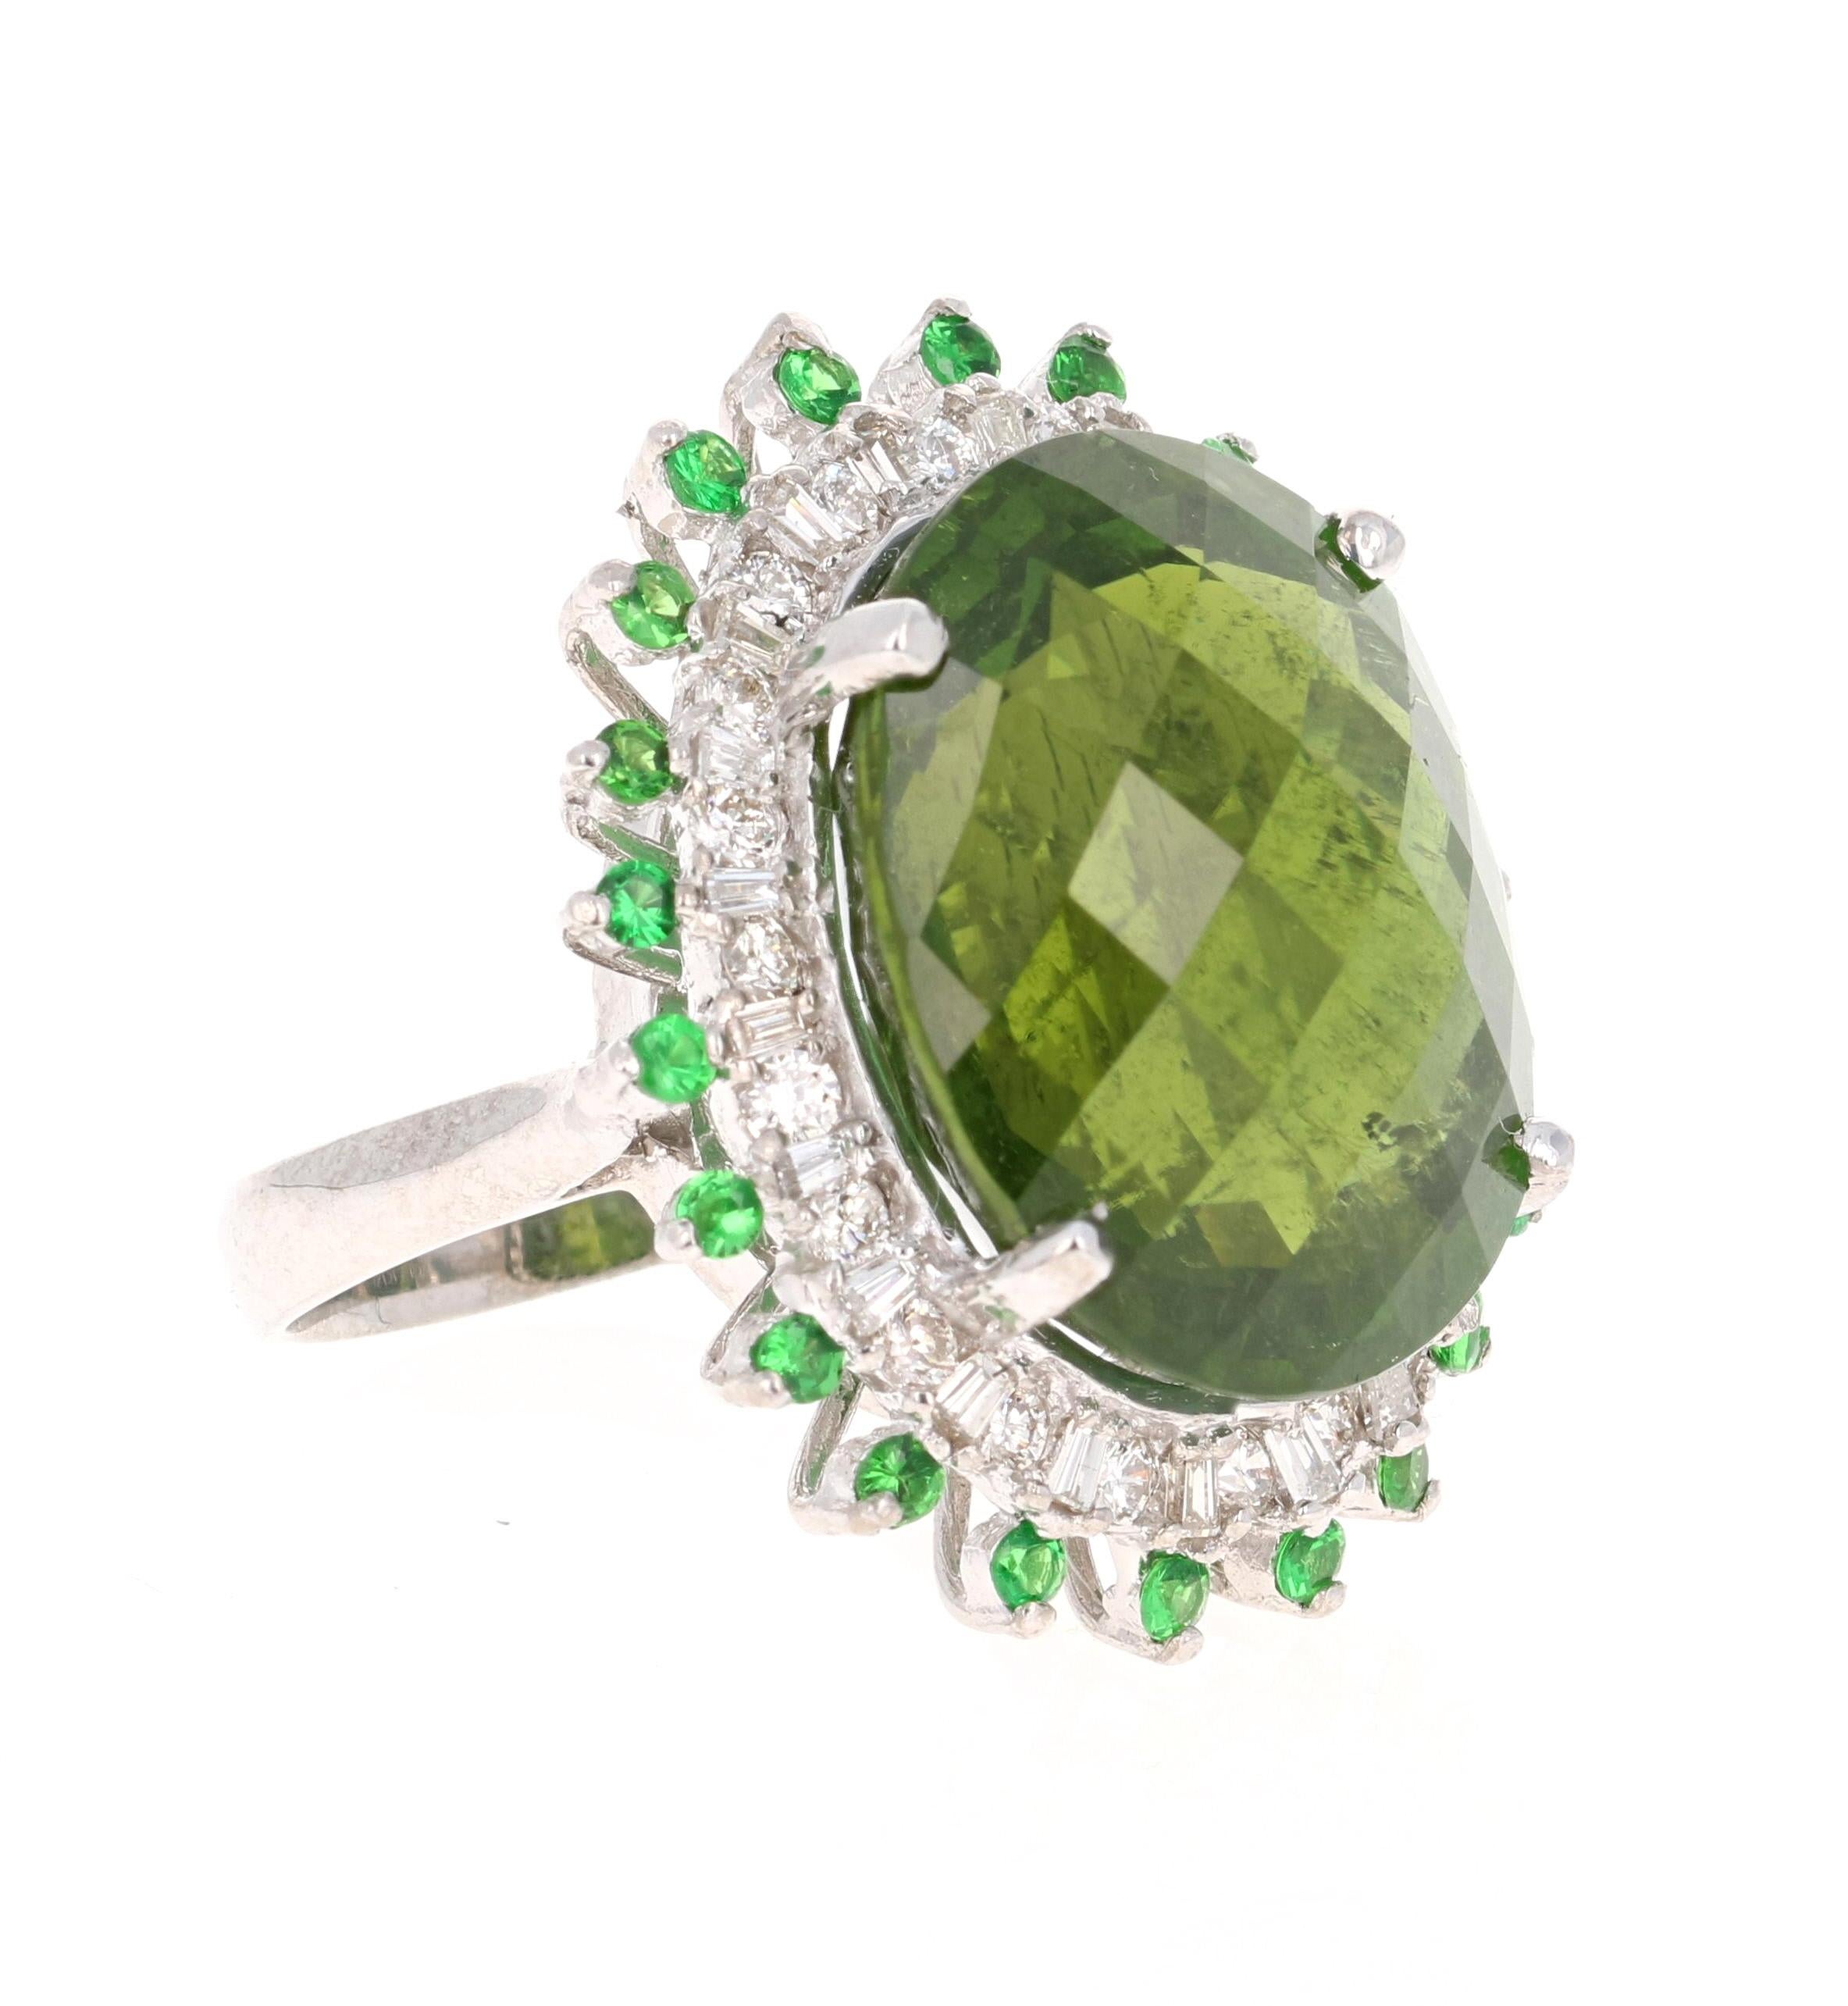 Eine Schönheit, die mit Sicherheit nichts weniger als ein Statement ist! 

Dieser Ring hat eine herrlich schöne und große Oval Checkered Cut Green Turmalin, die 26,25 Karat wiegt. Der grüne Turmalin hat olivgrüne und dschungelgrüne Farbtöne und